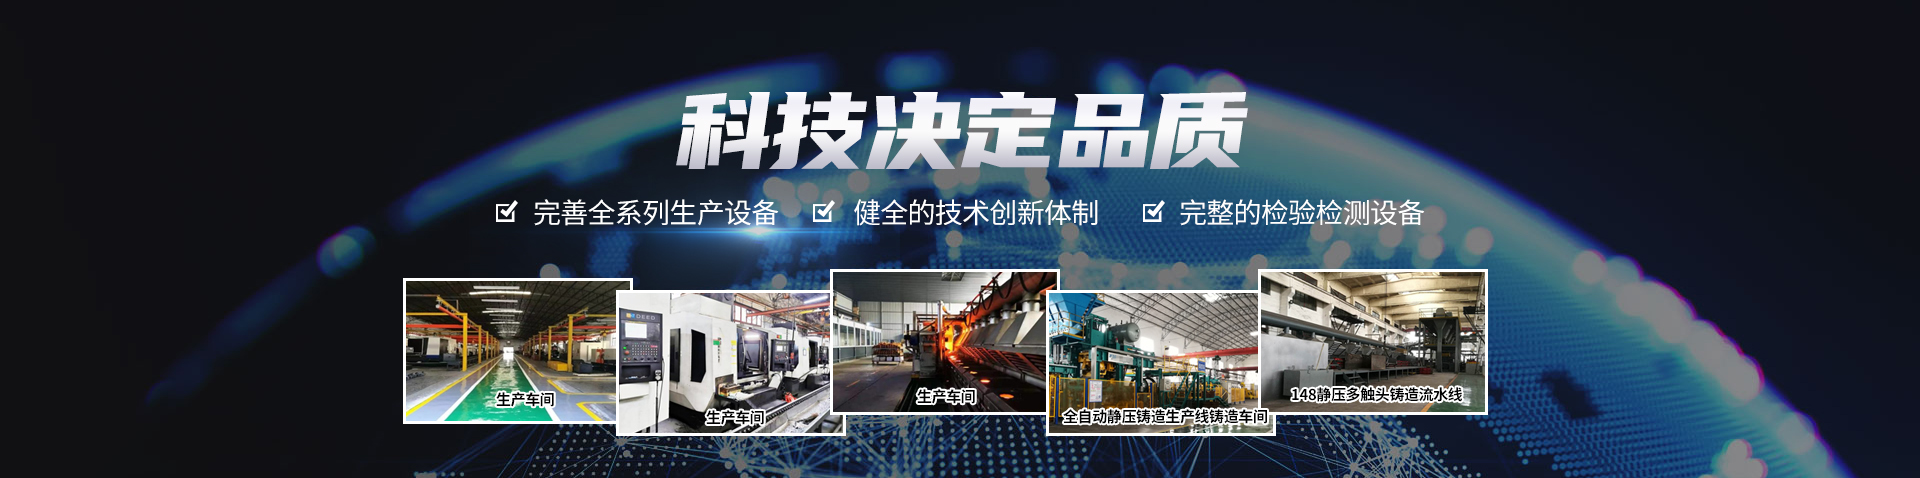 关于当前产品ag电子游艺·(中国)官方网站的成功案例等相关图片